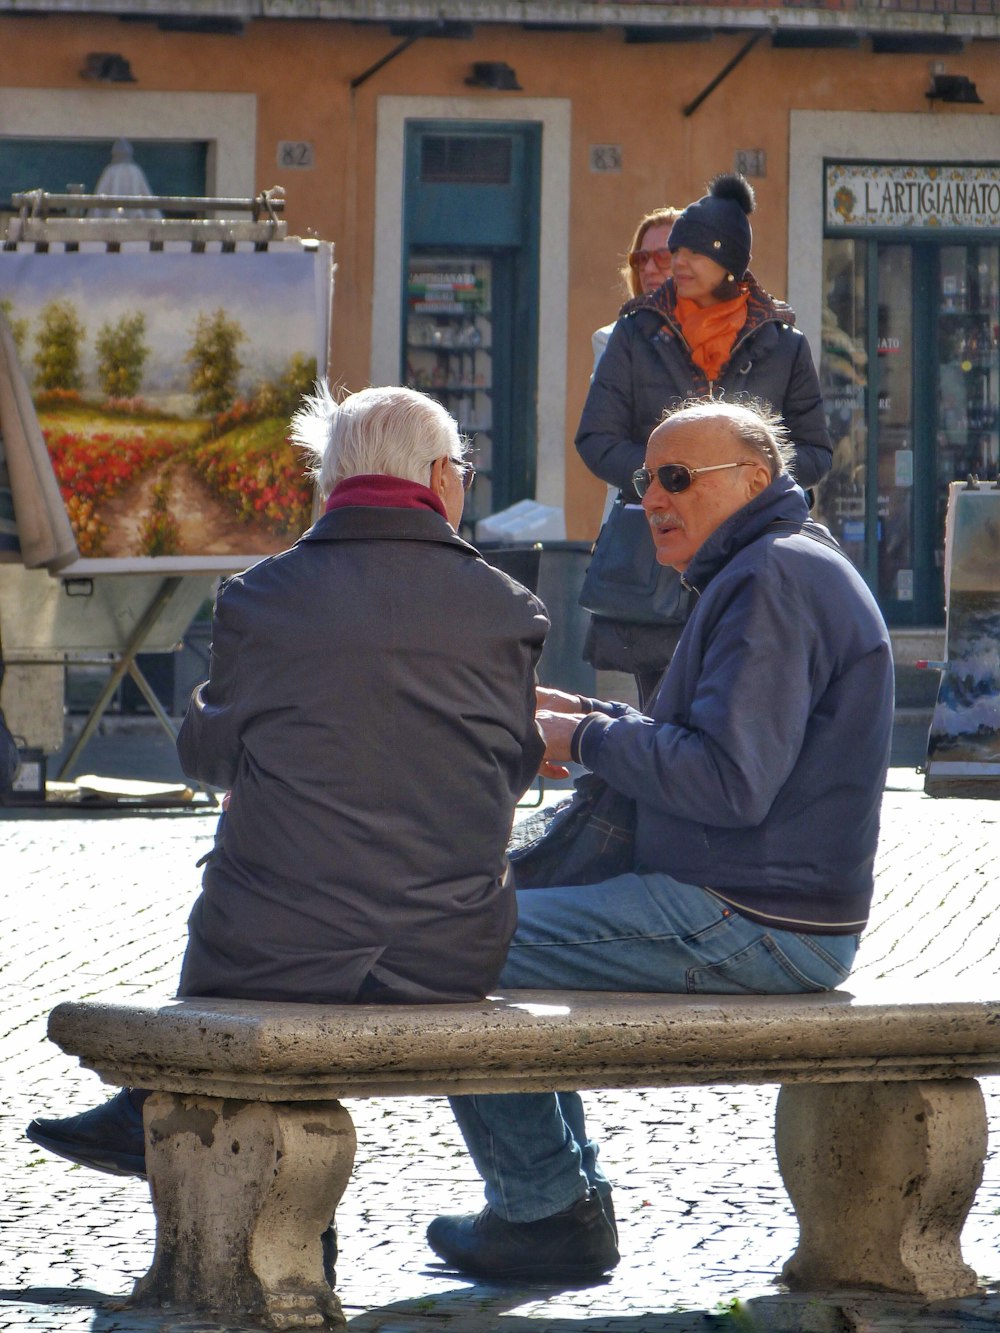 コンクリートのベンチに座っている人の浅い焦点の写真